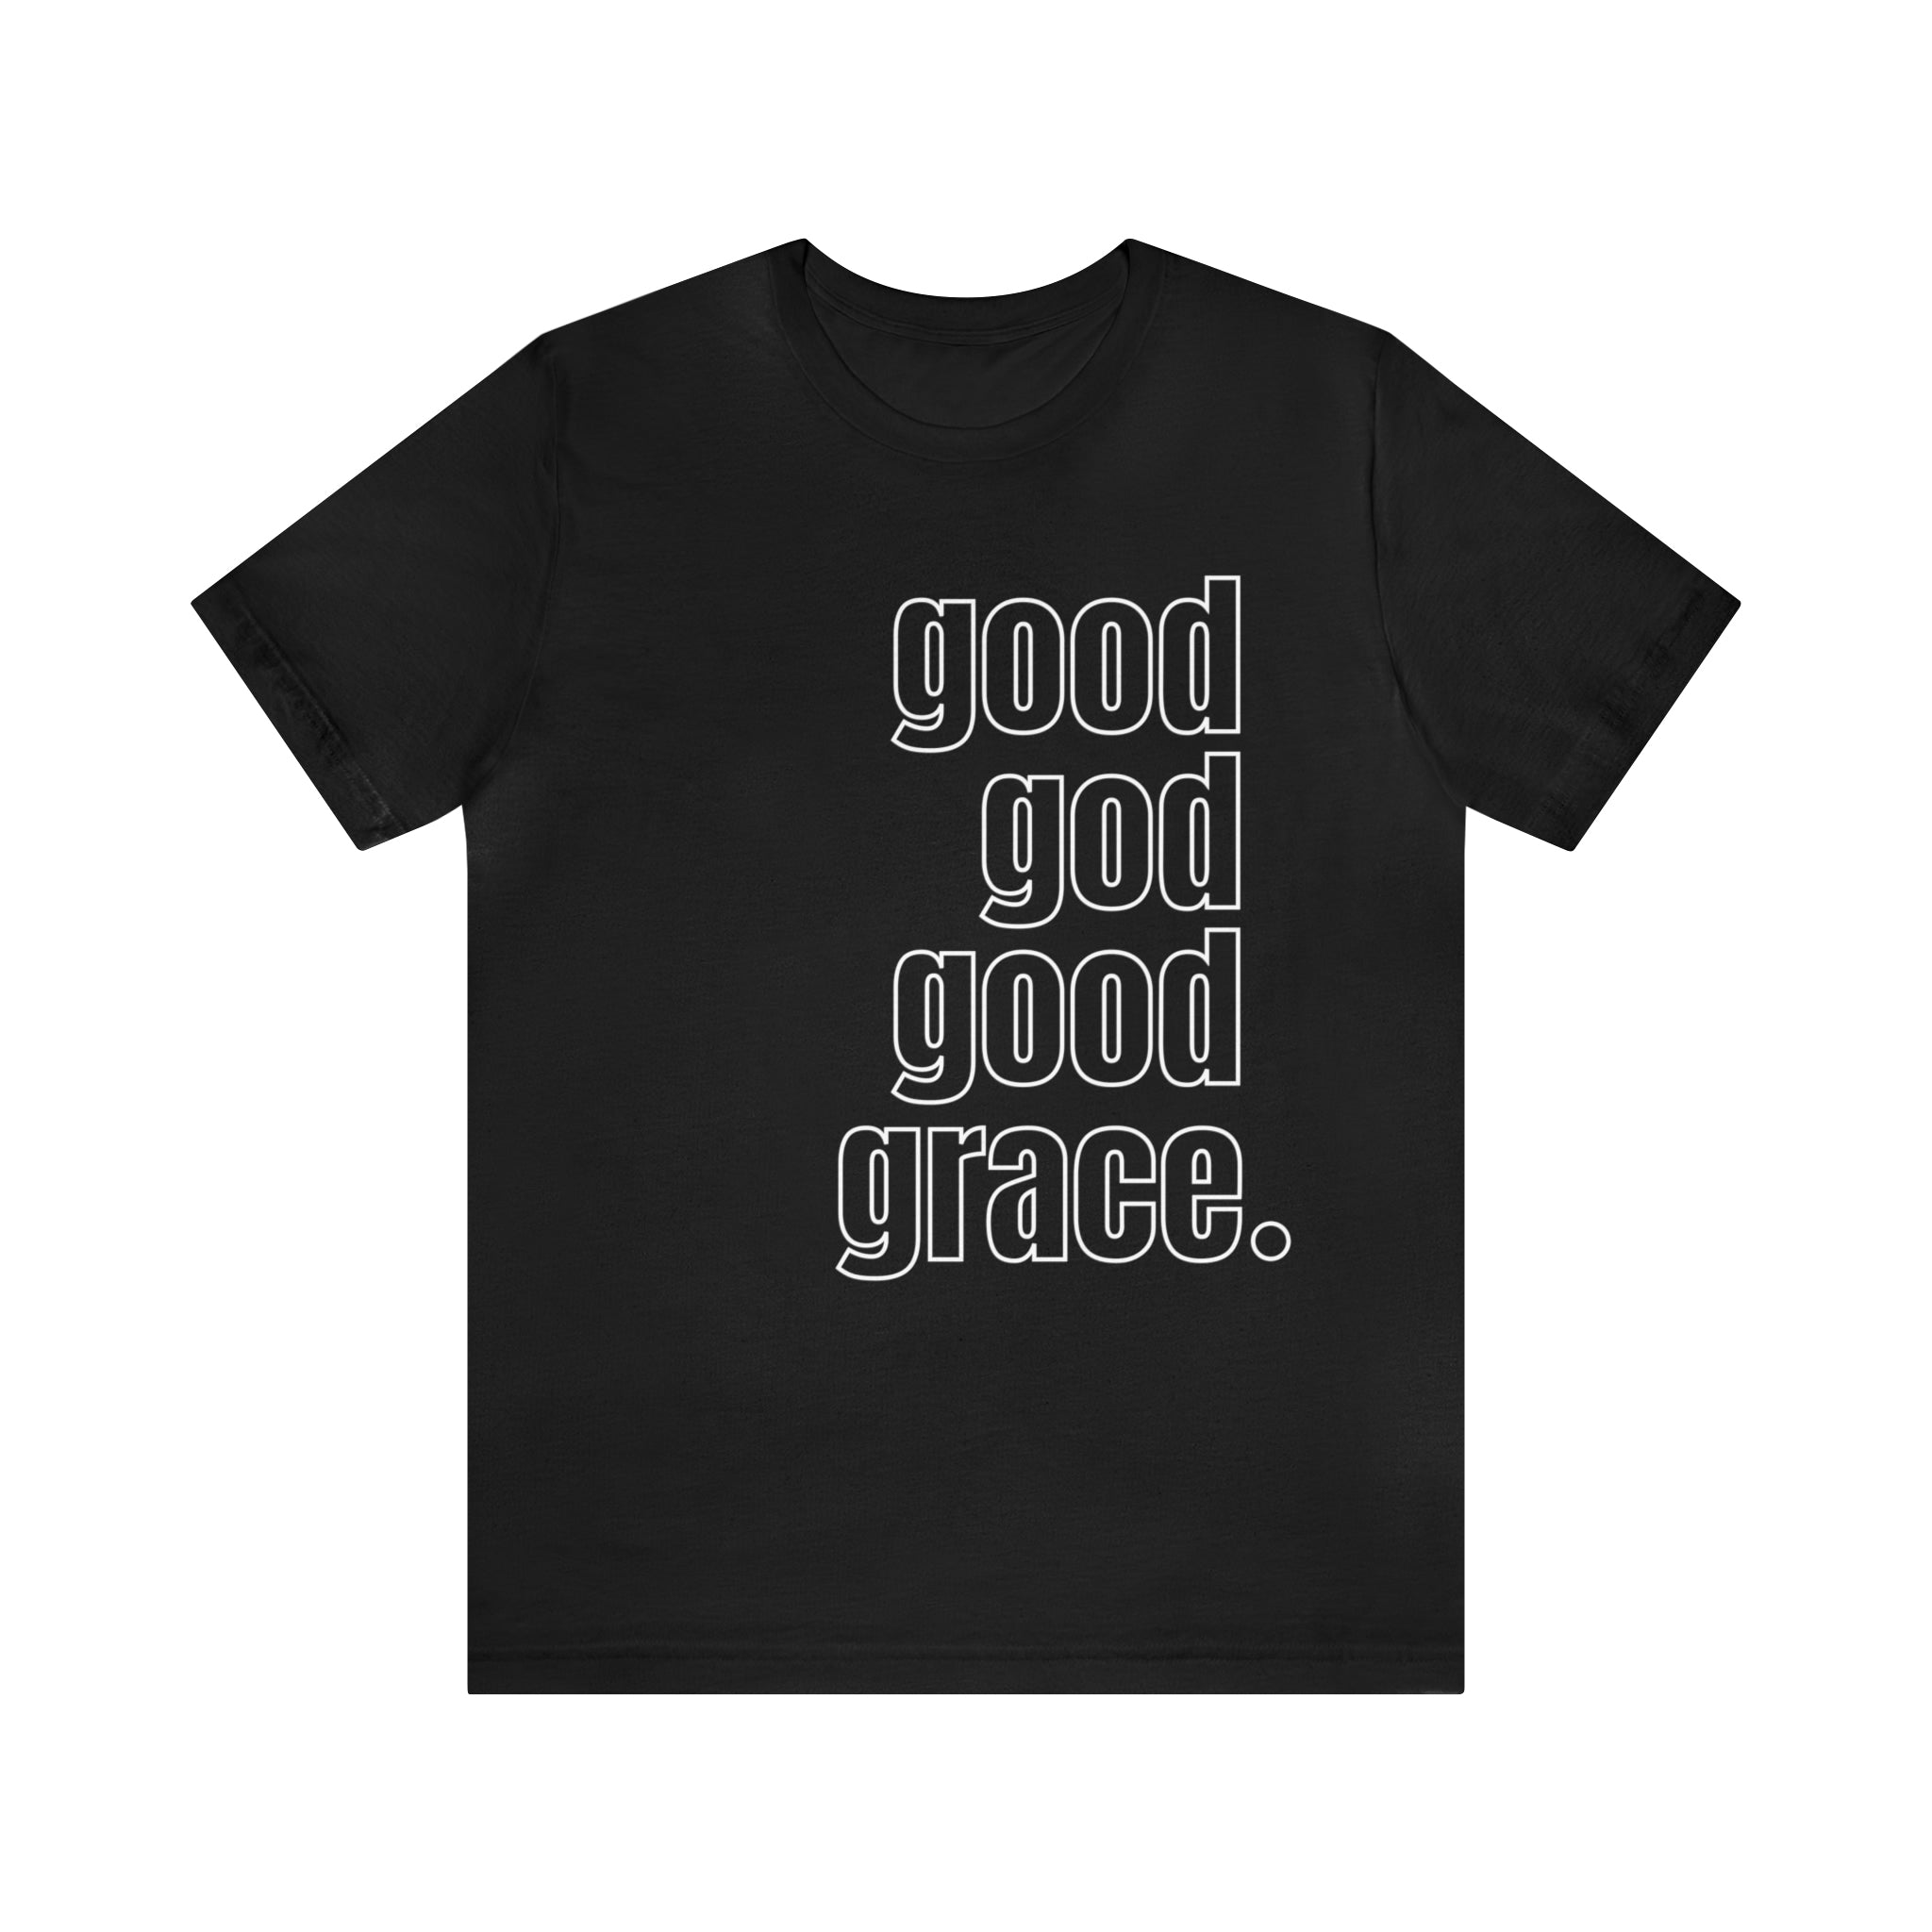 Workout Tank. GOD GOALS GRACE. Motivation. Christian Shirt. Fueled